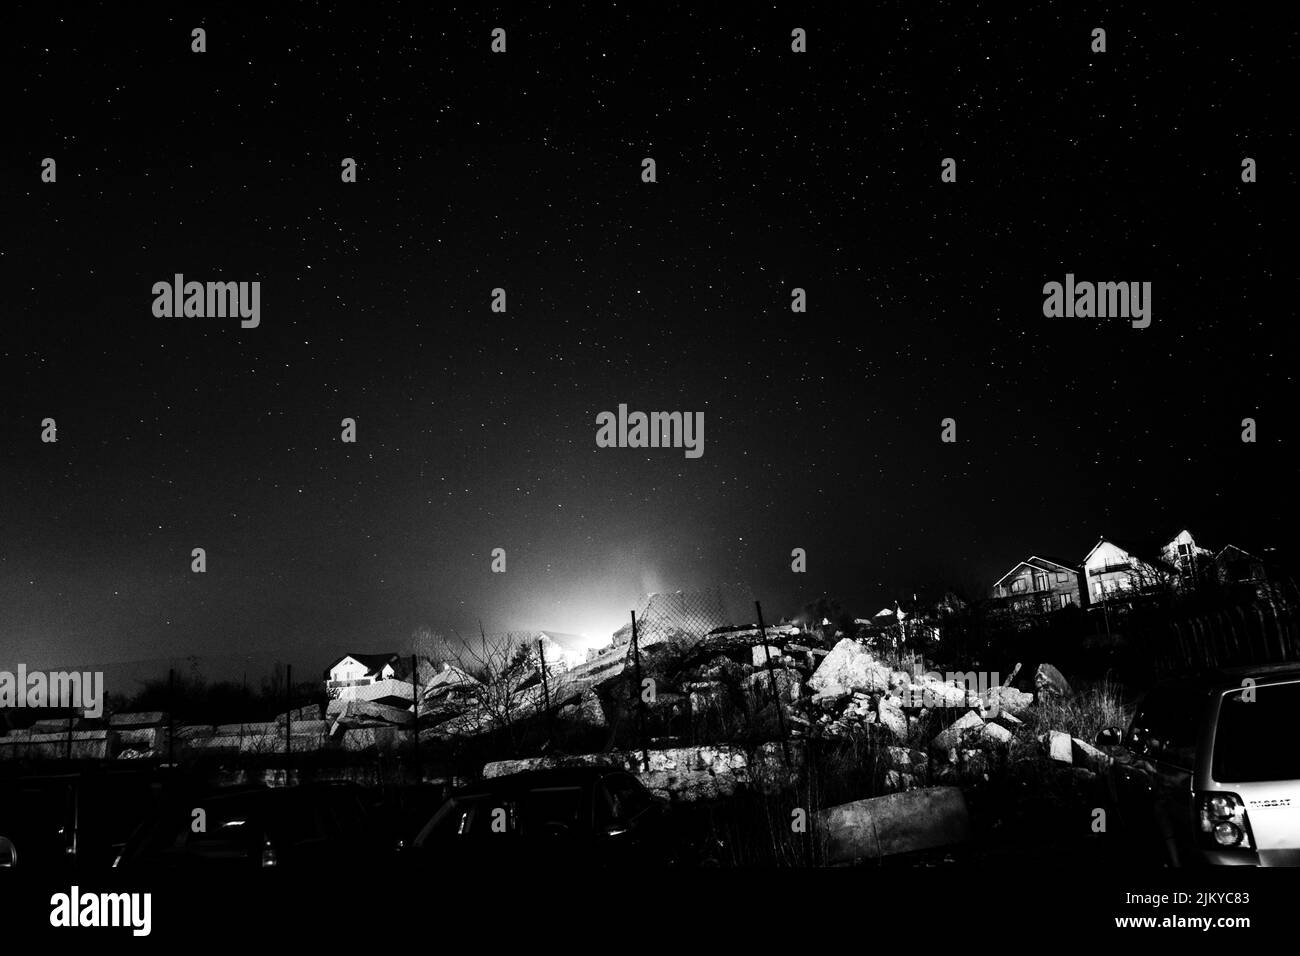 Una imagen en escala de grises de un cielo nocturno estrellado en un campo sobre una pequeña casa y un coche aparcado en el lateral Foto de stock